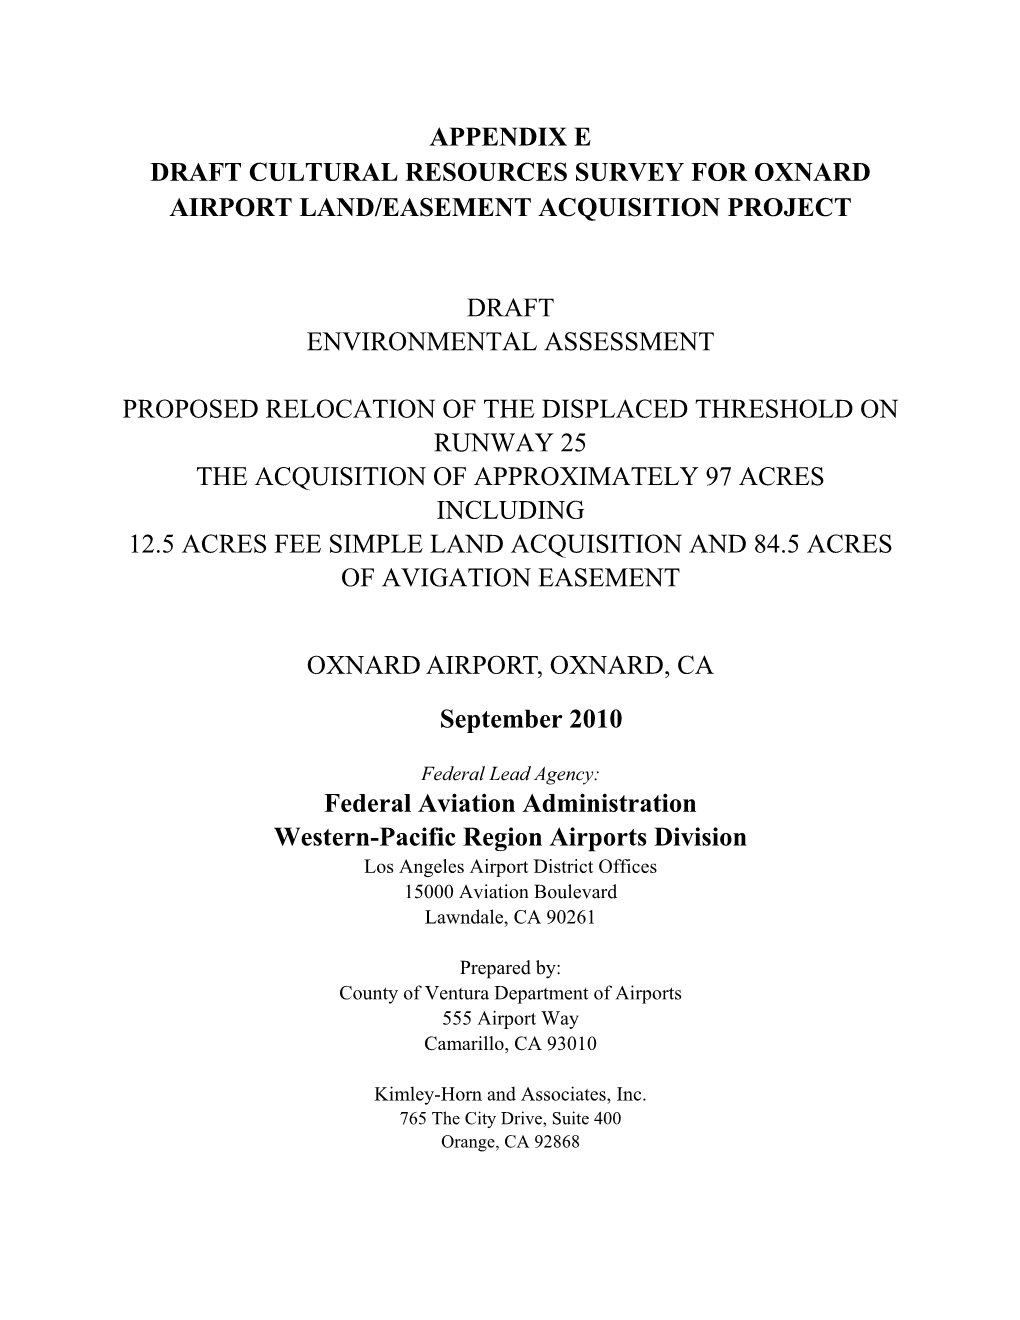 Appendix E Draft Cultural Resources Survey for Oxnard Airport Land/Easement Acquisition Project